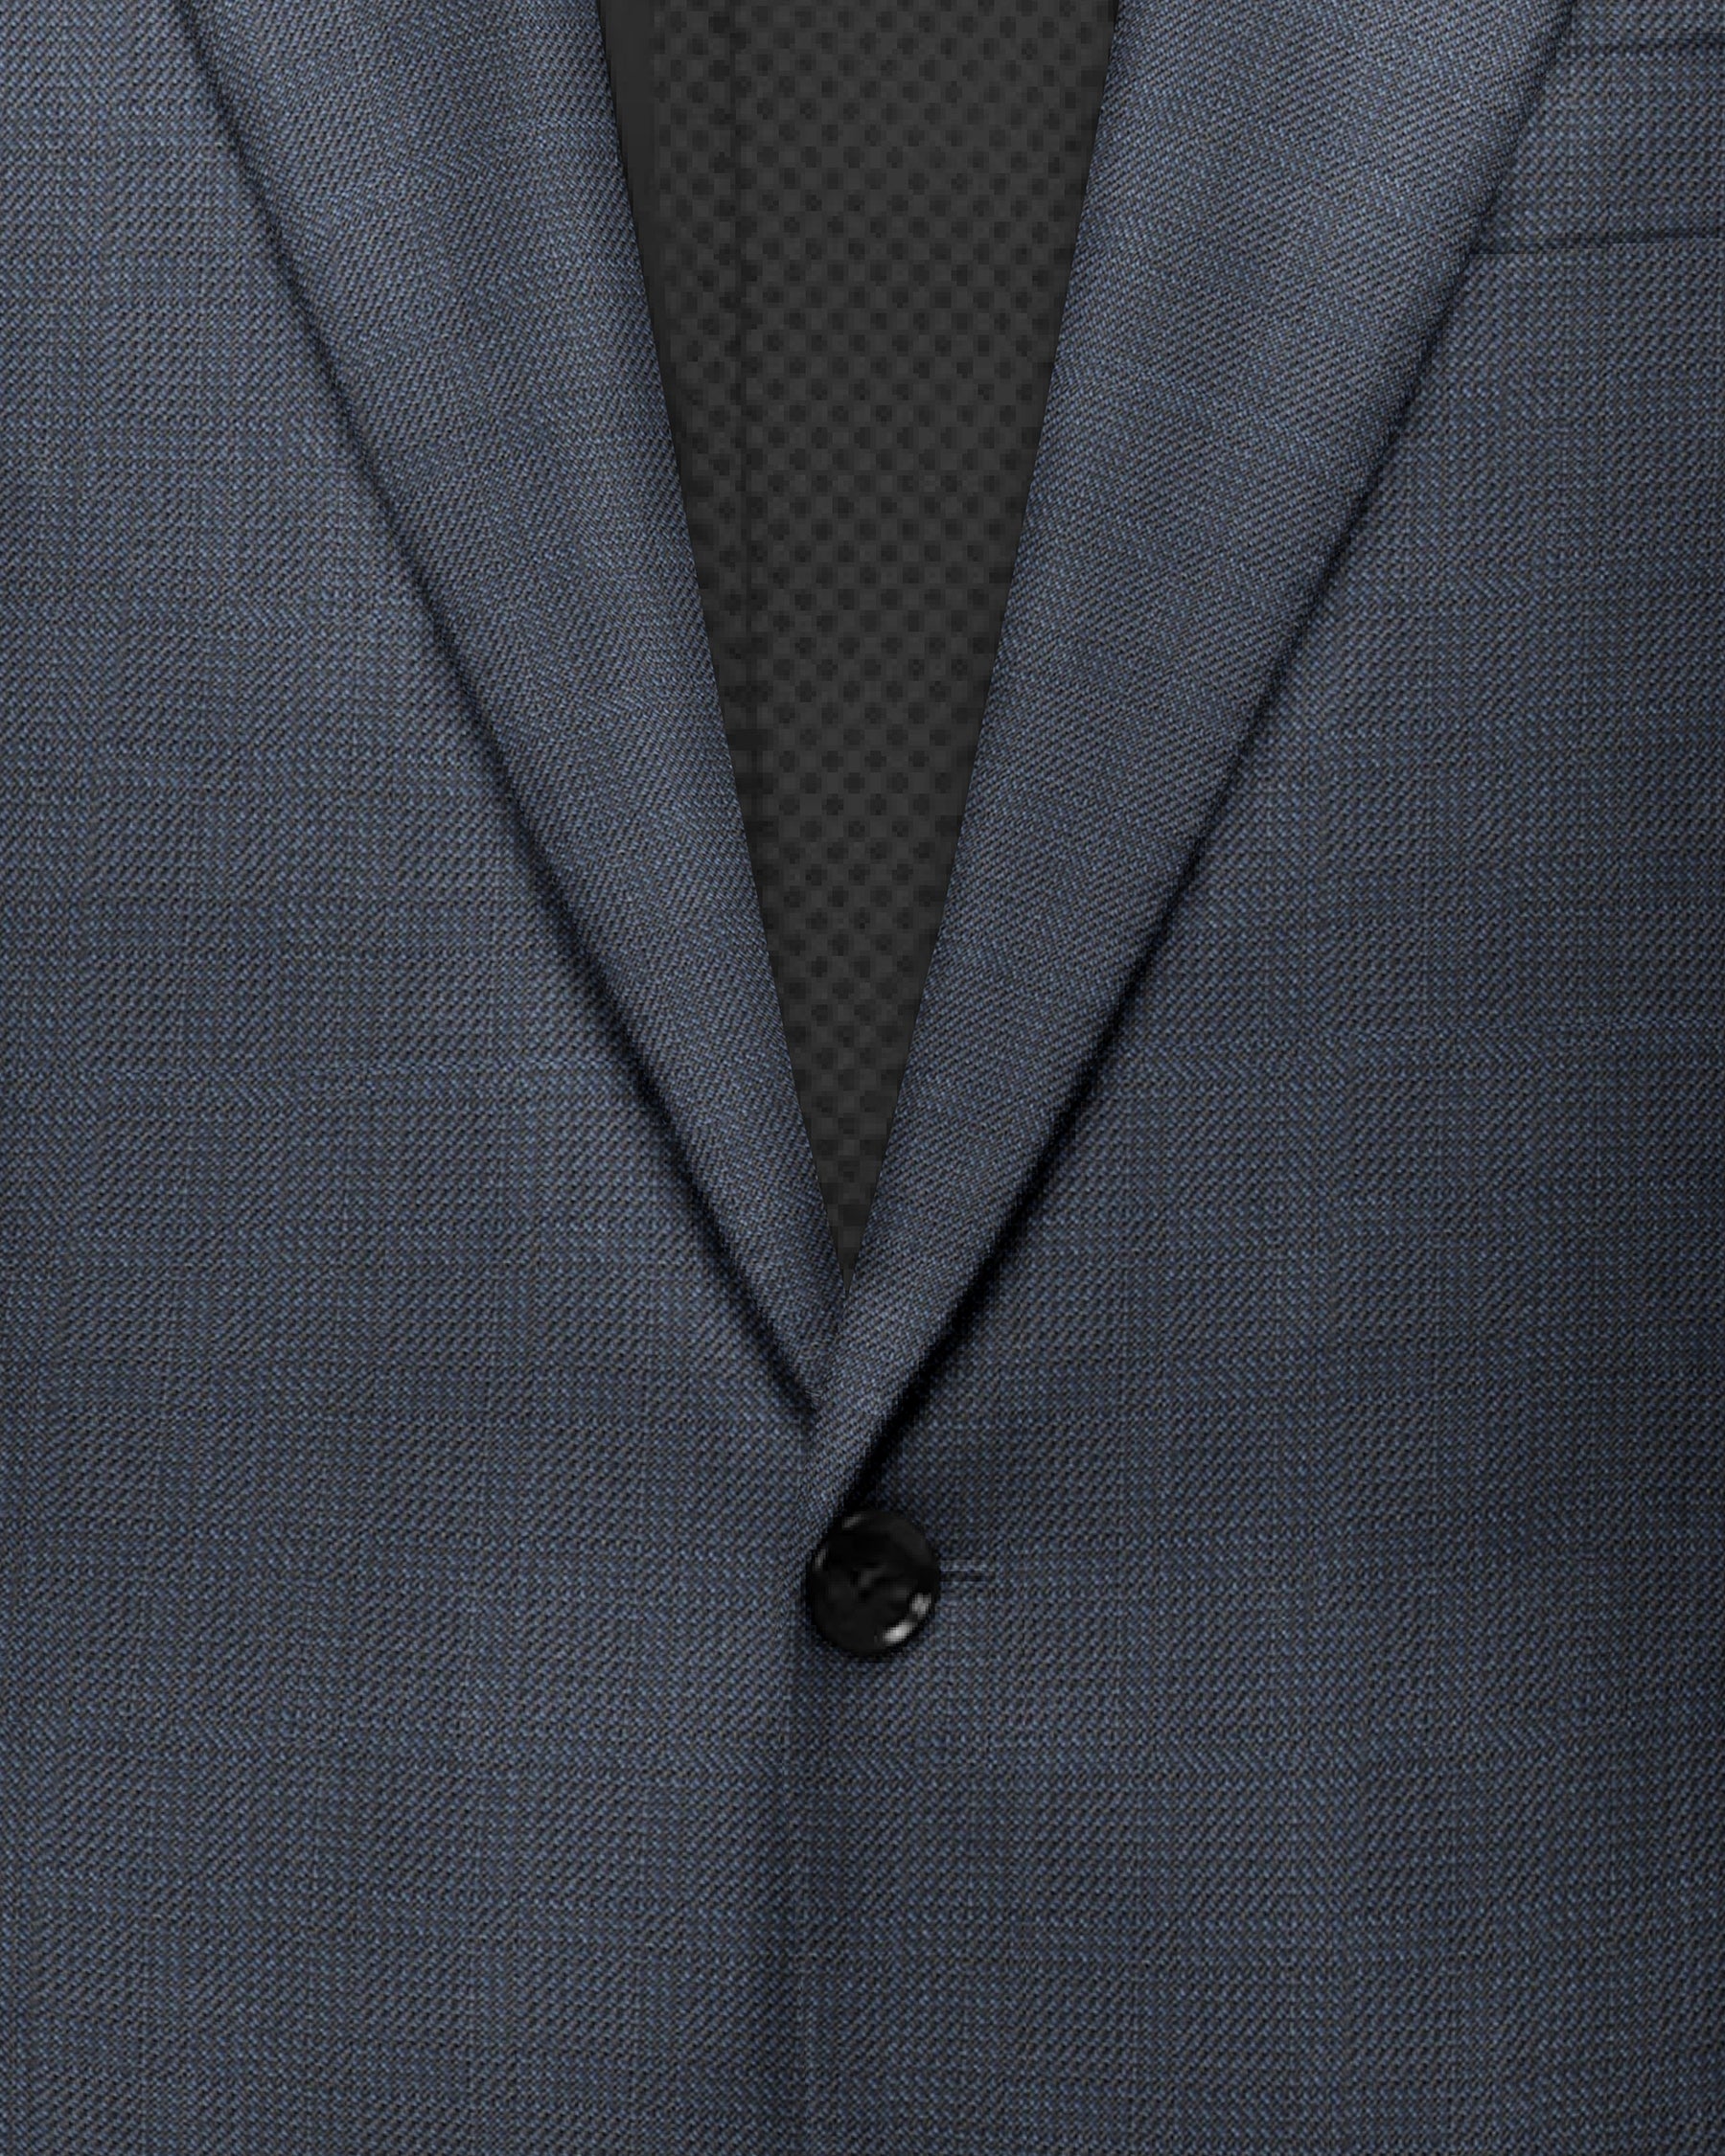 Steel Blue Subtle Checked Suit